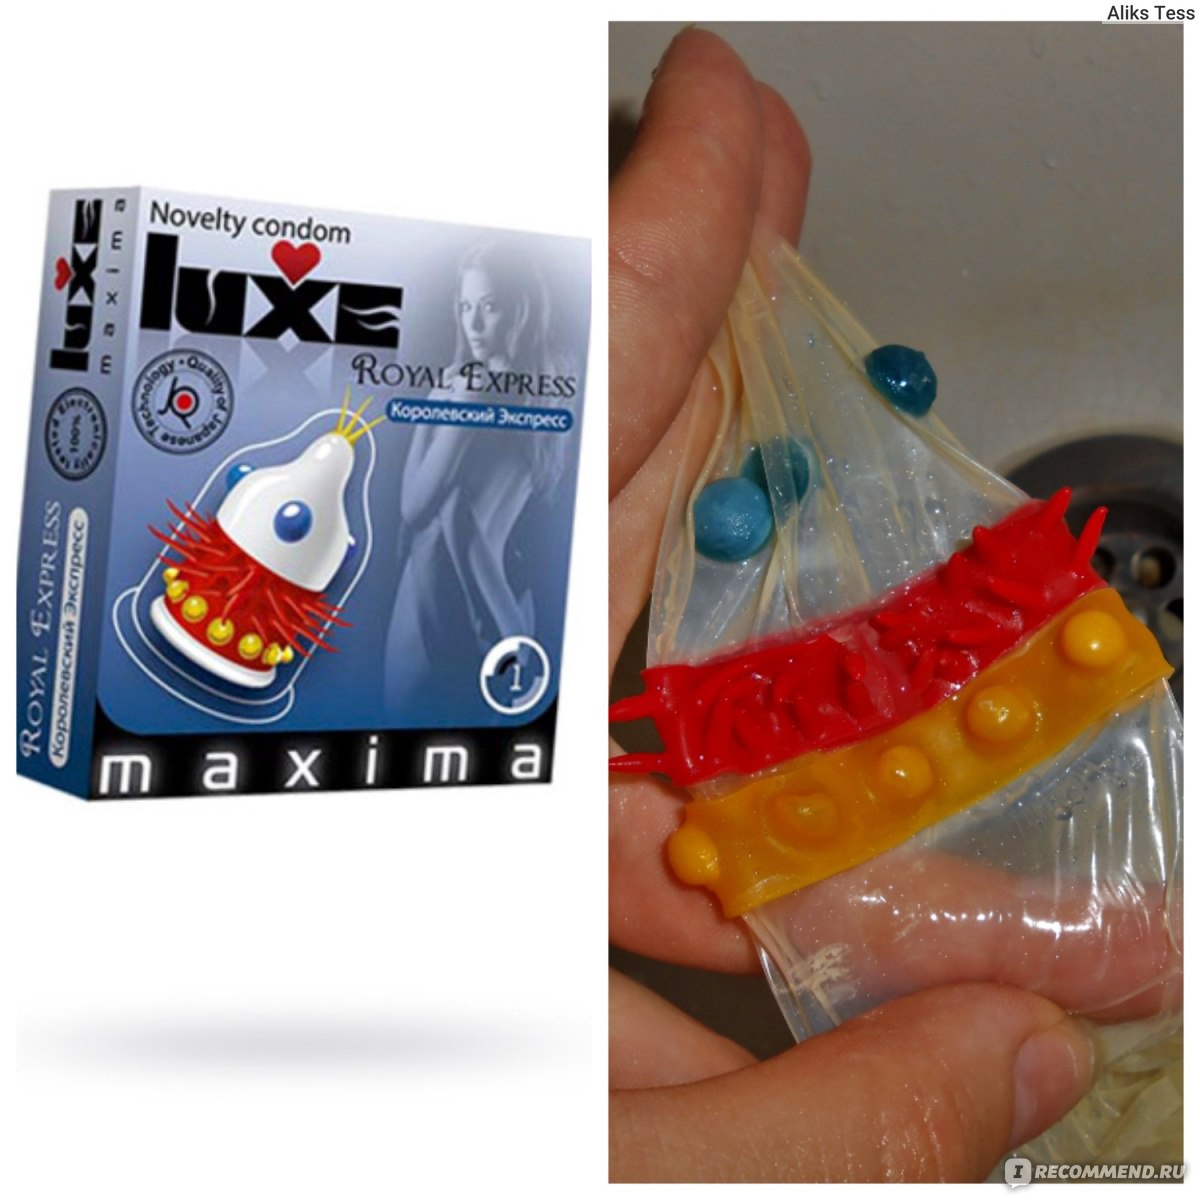 Категория: Товары для здоровья Тип товаров: Презервативы Бренд: Luxe.